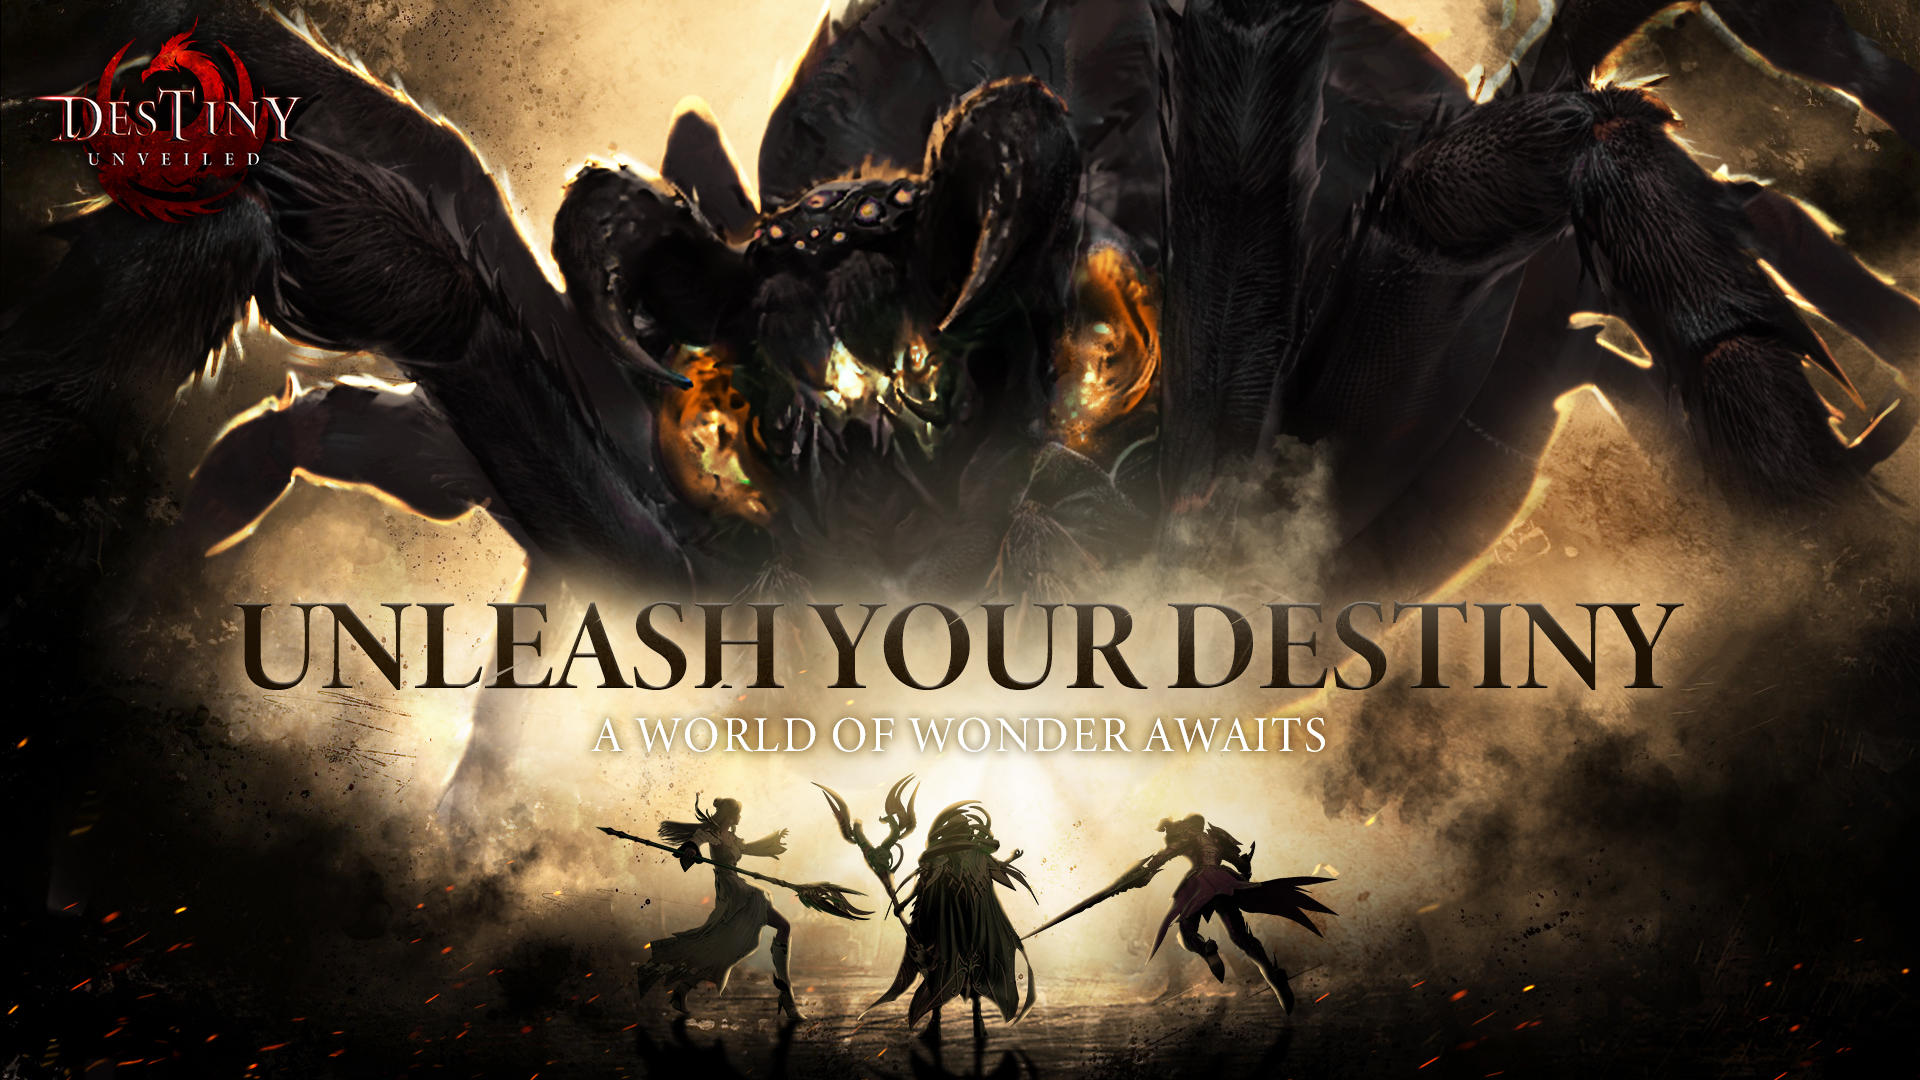 Destiny Unveiled screenshot game